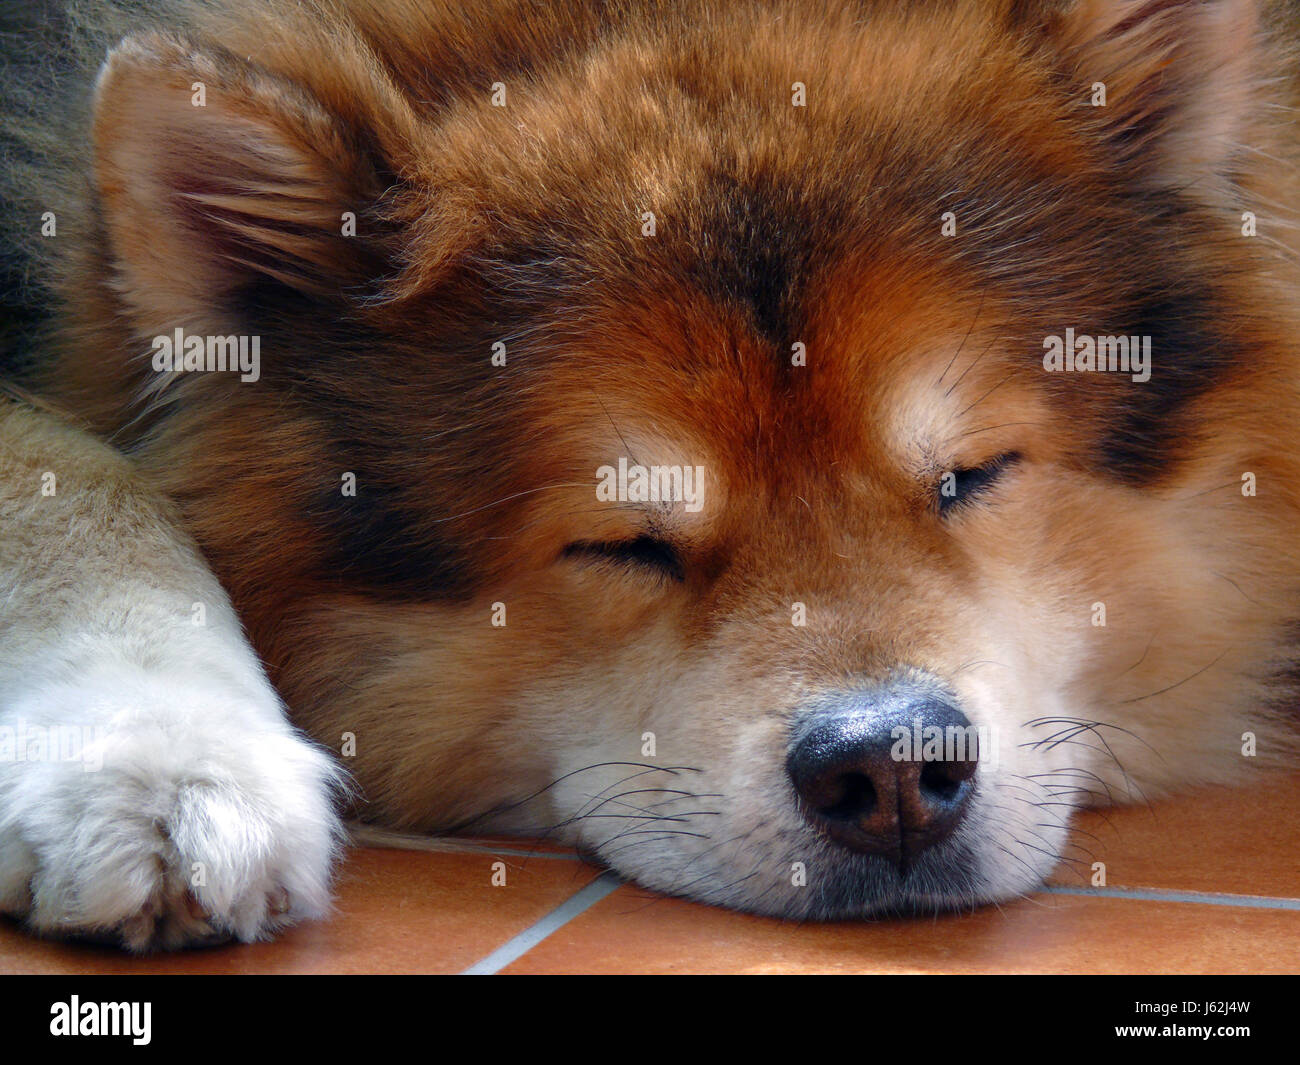 Traumschlaf Hund schlafen Faulenzer Schläfer Entspannung Porträt Auge Orgel Traum Stockfoto